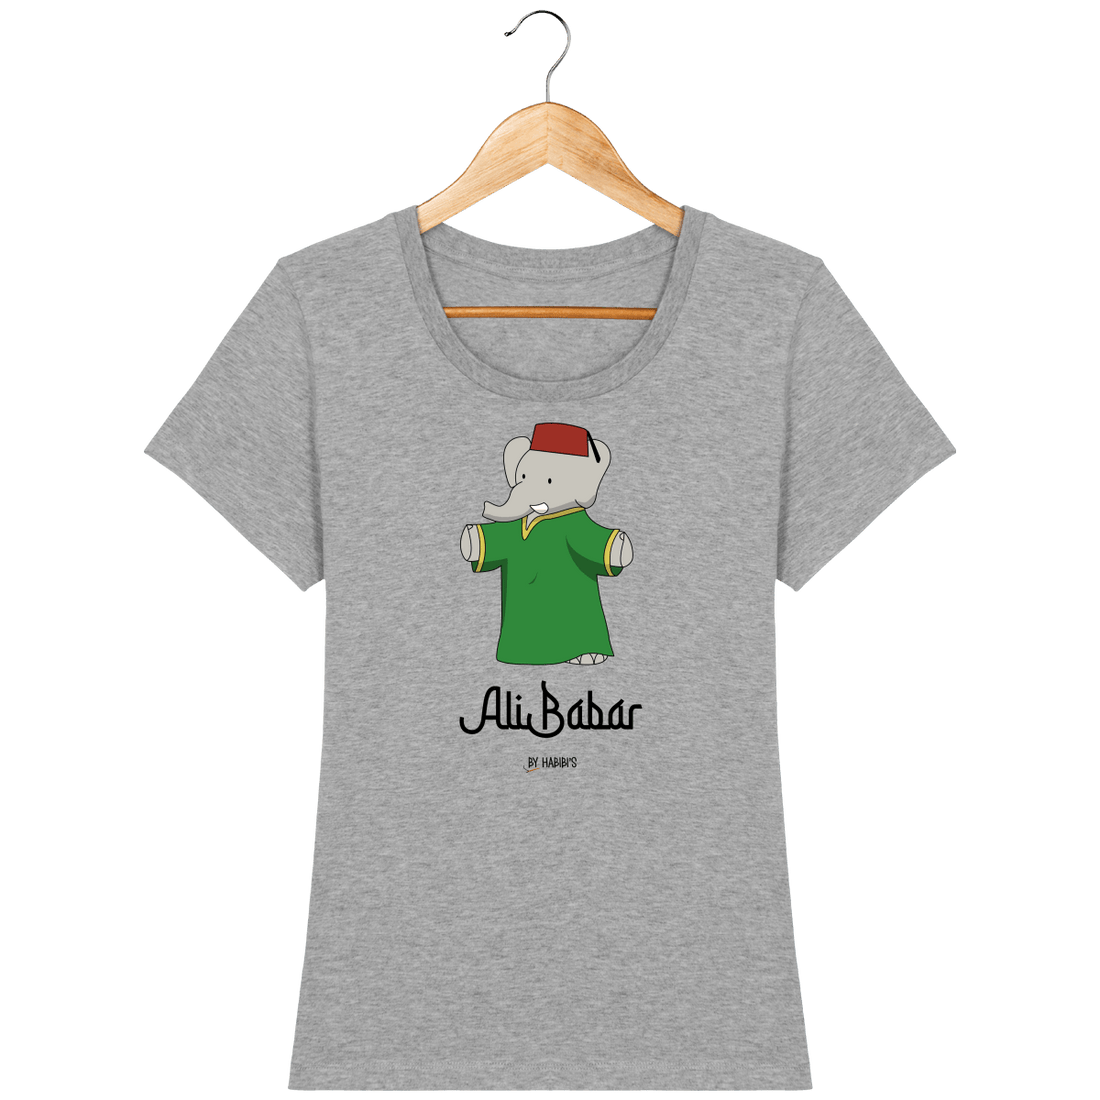 Femme>Tee-shirts - T-Shirt Femme <br> Ali Babar